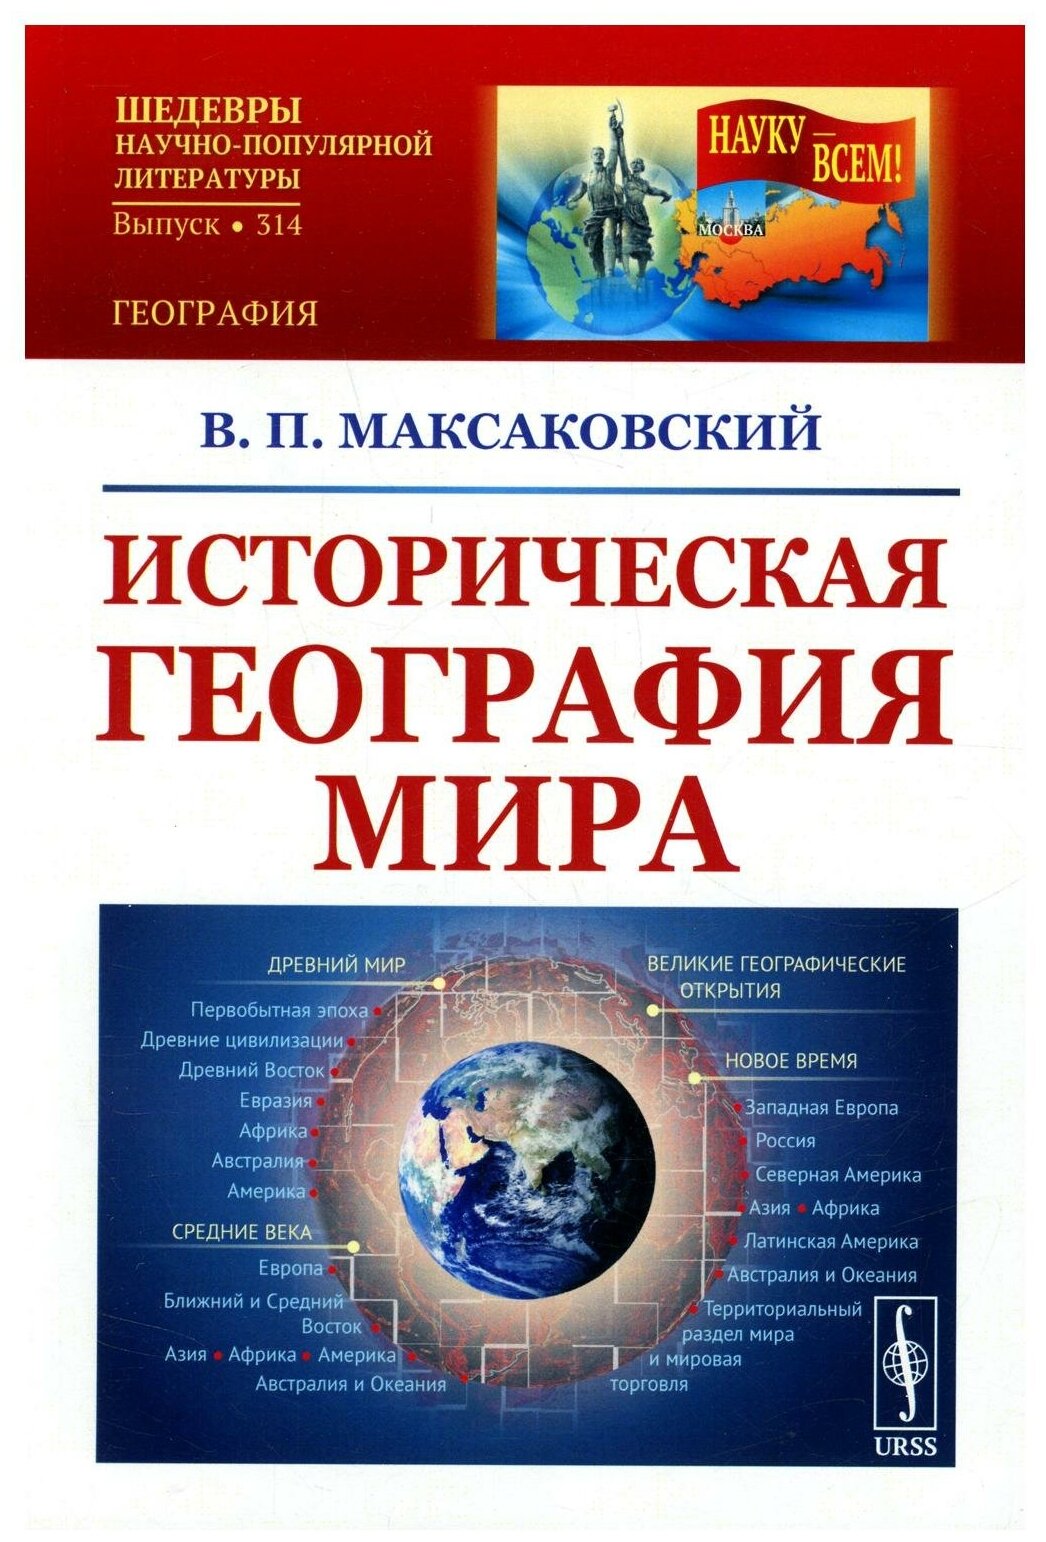 Книга Историческая география мира - фото №1